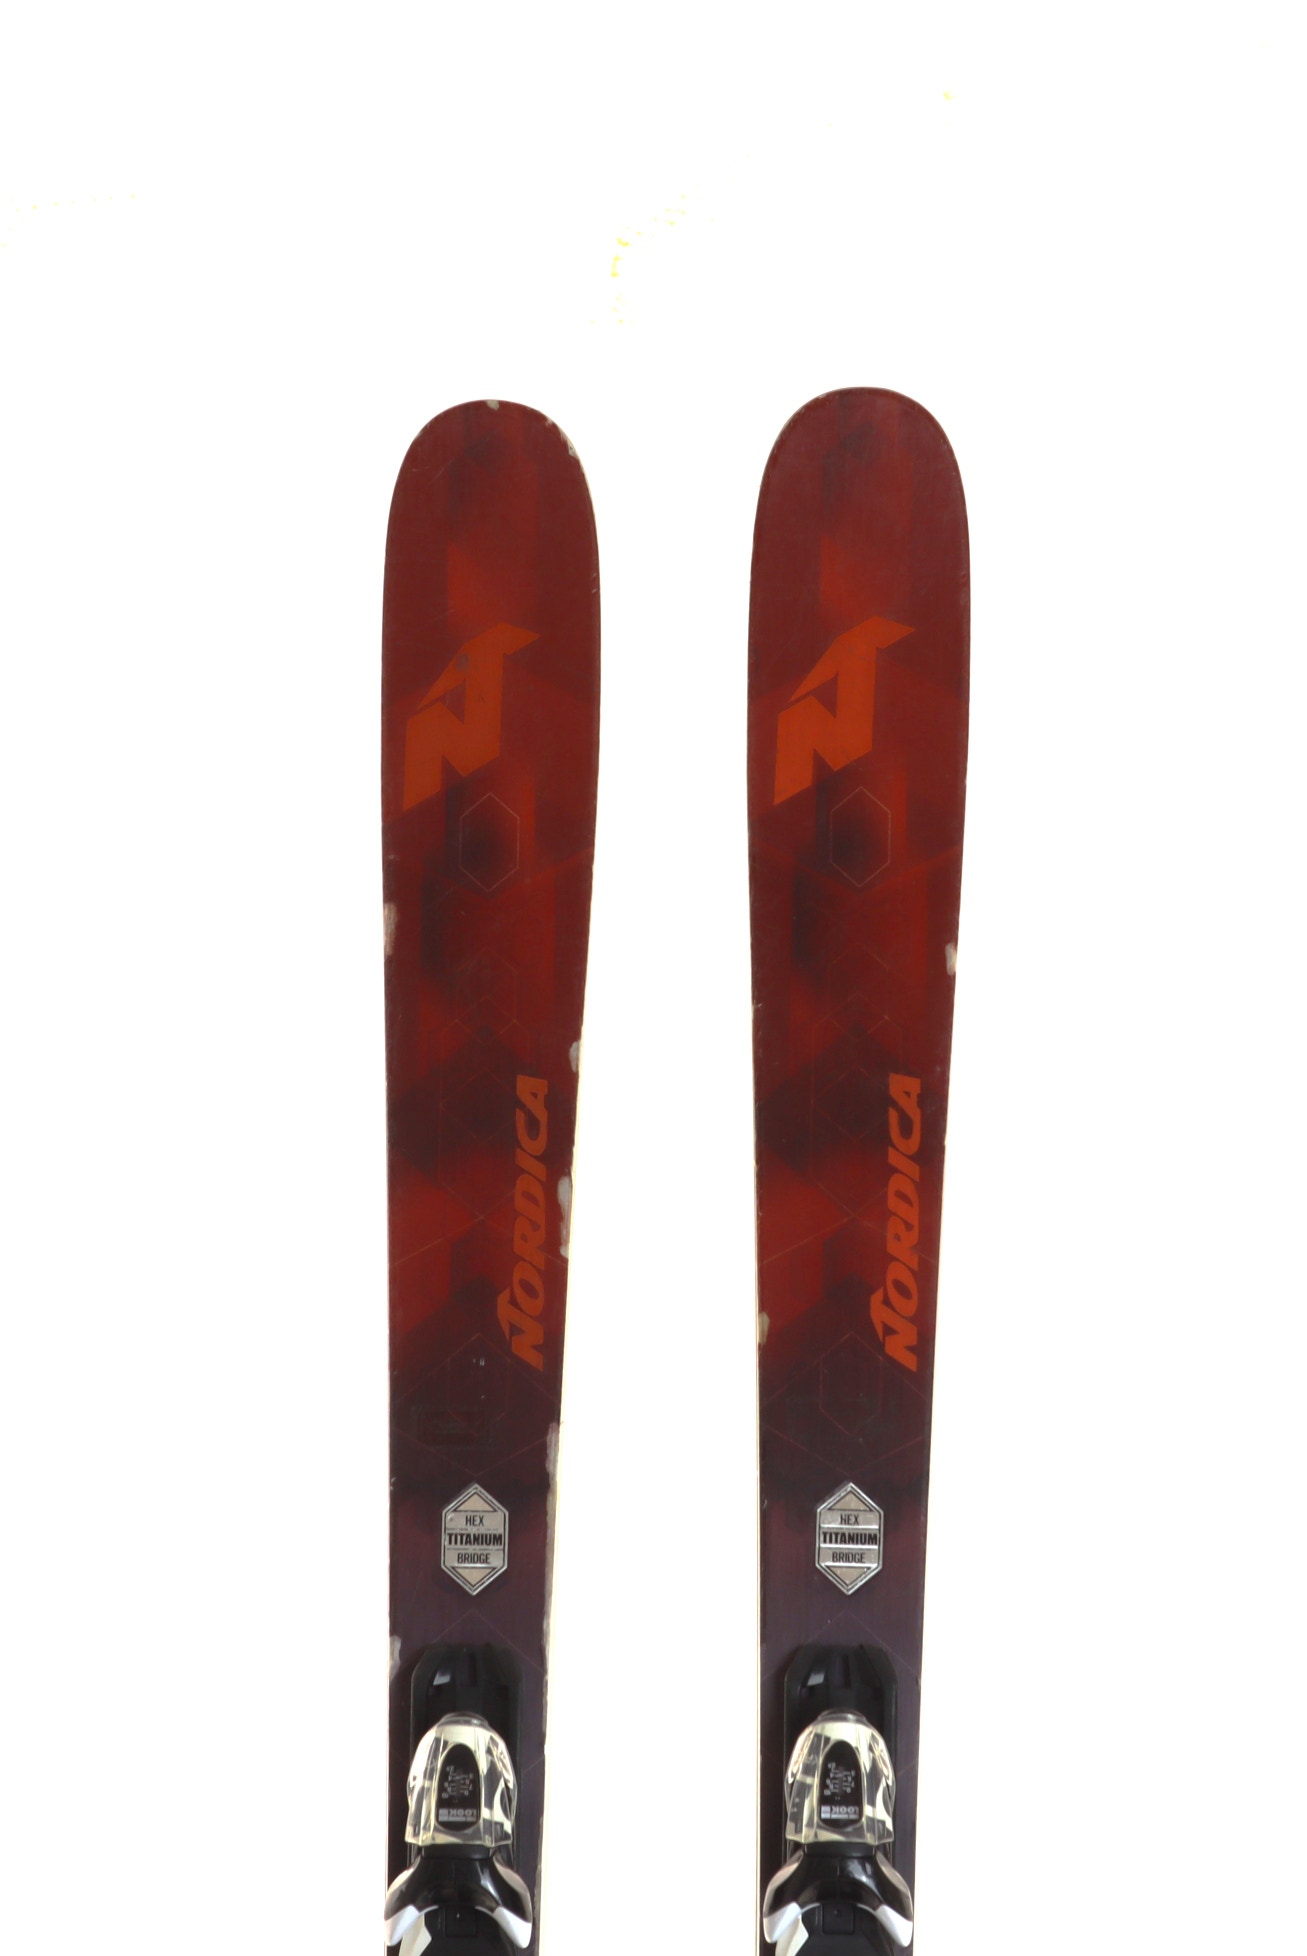 Used 2018 Nordica Navigator 80 Demo Ski with Bindings Size 165 (Option 211757)